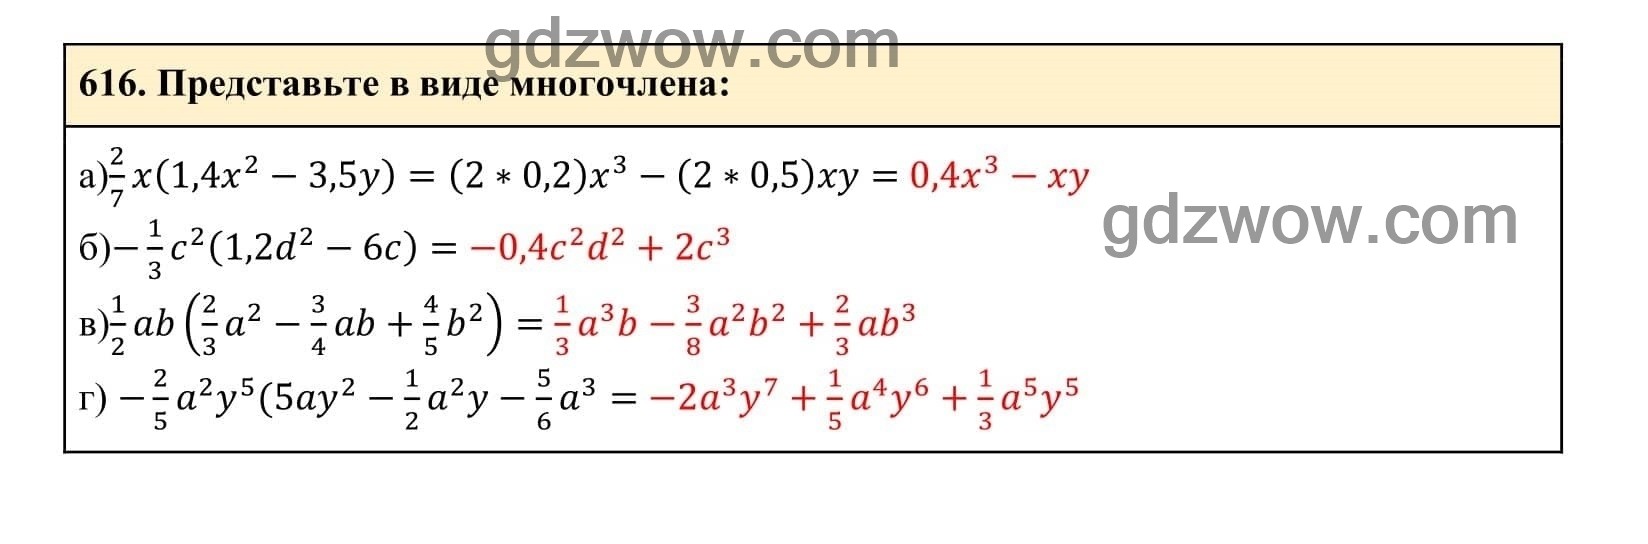 Упражнение 616 - ГДЗ по Алгебре 7 класс Учебник Макарычев (решебник) - GDZwow